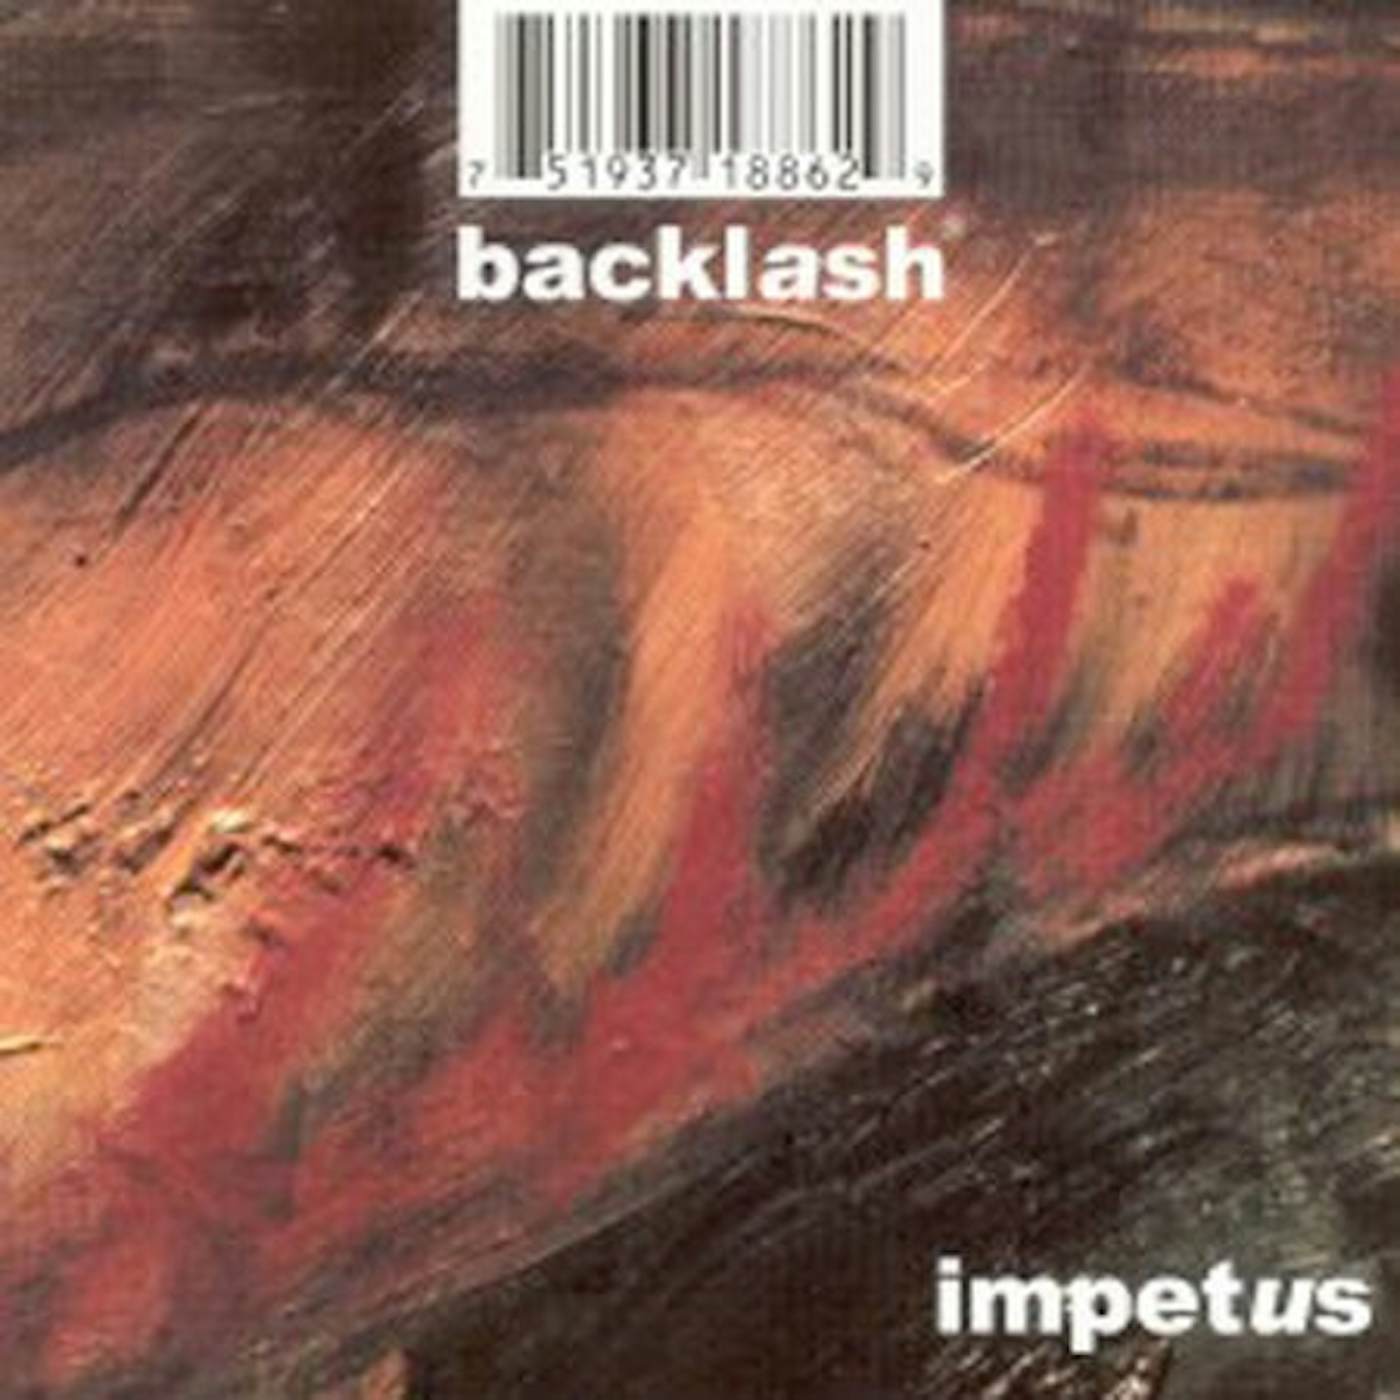 Backlash IMPETUS CD